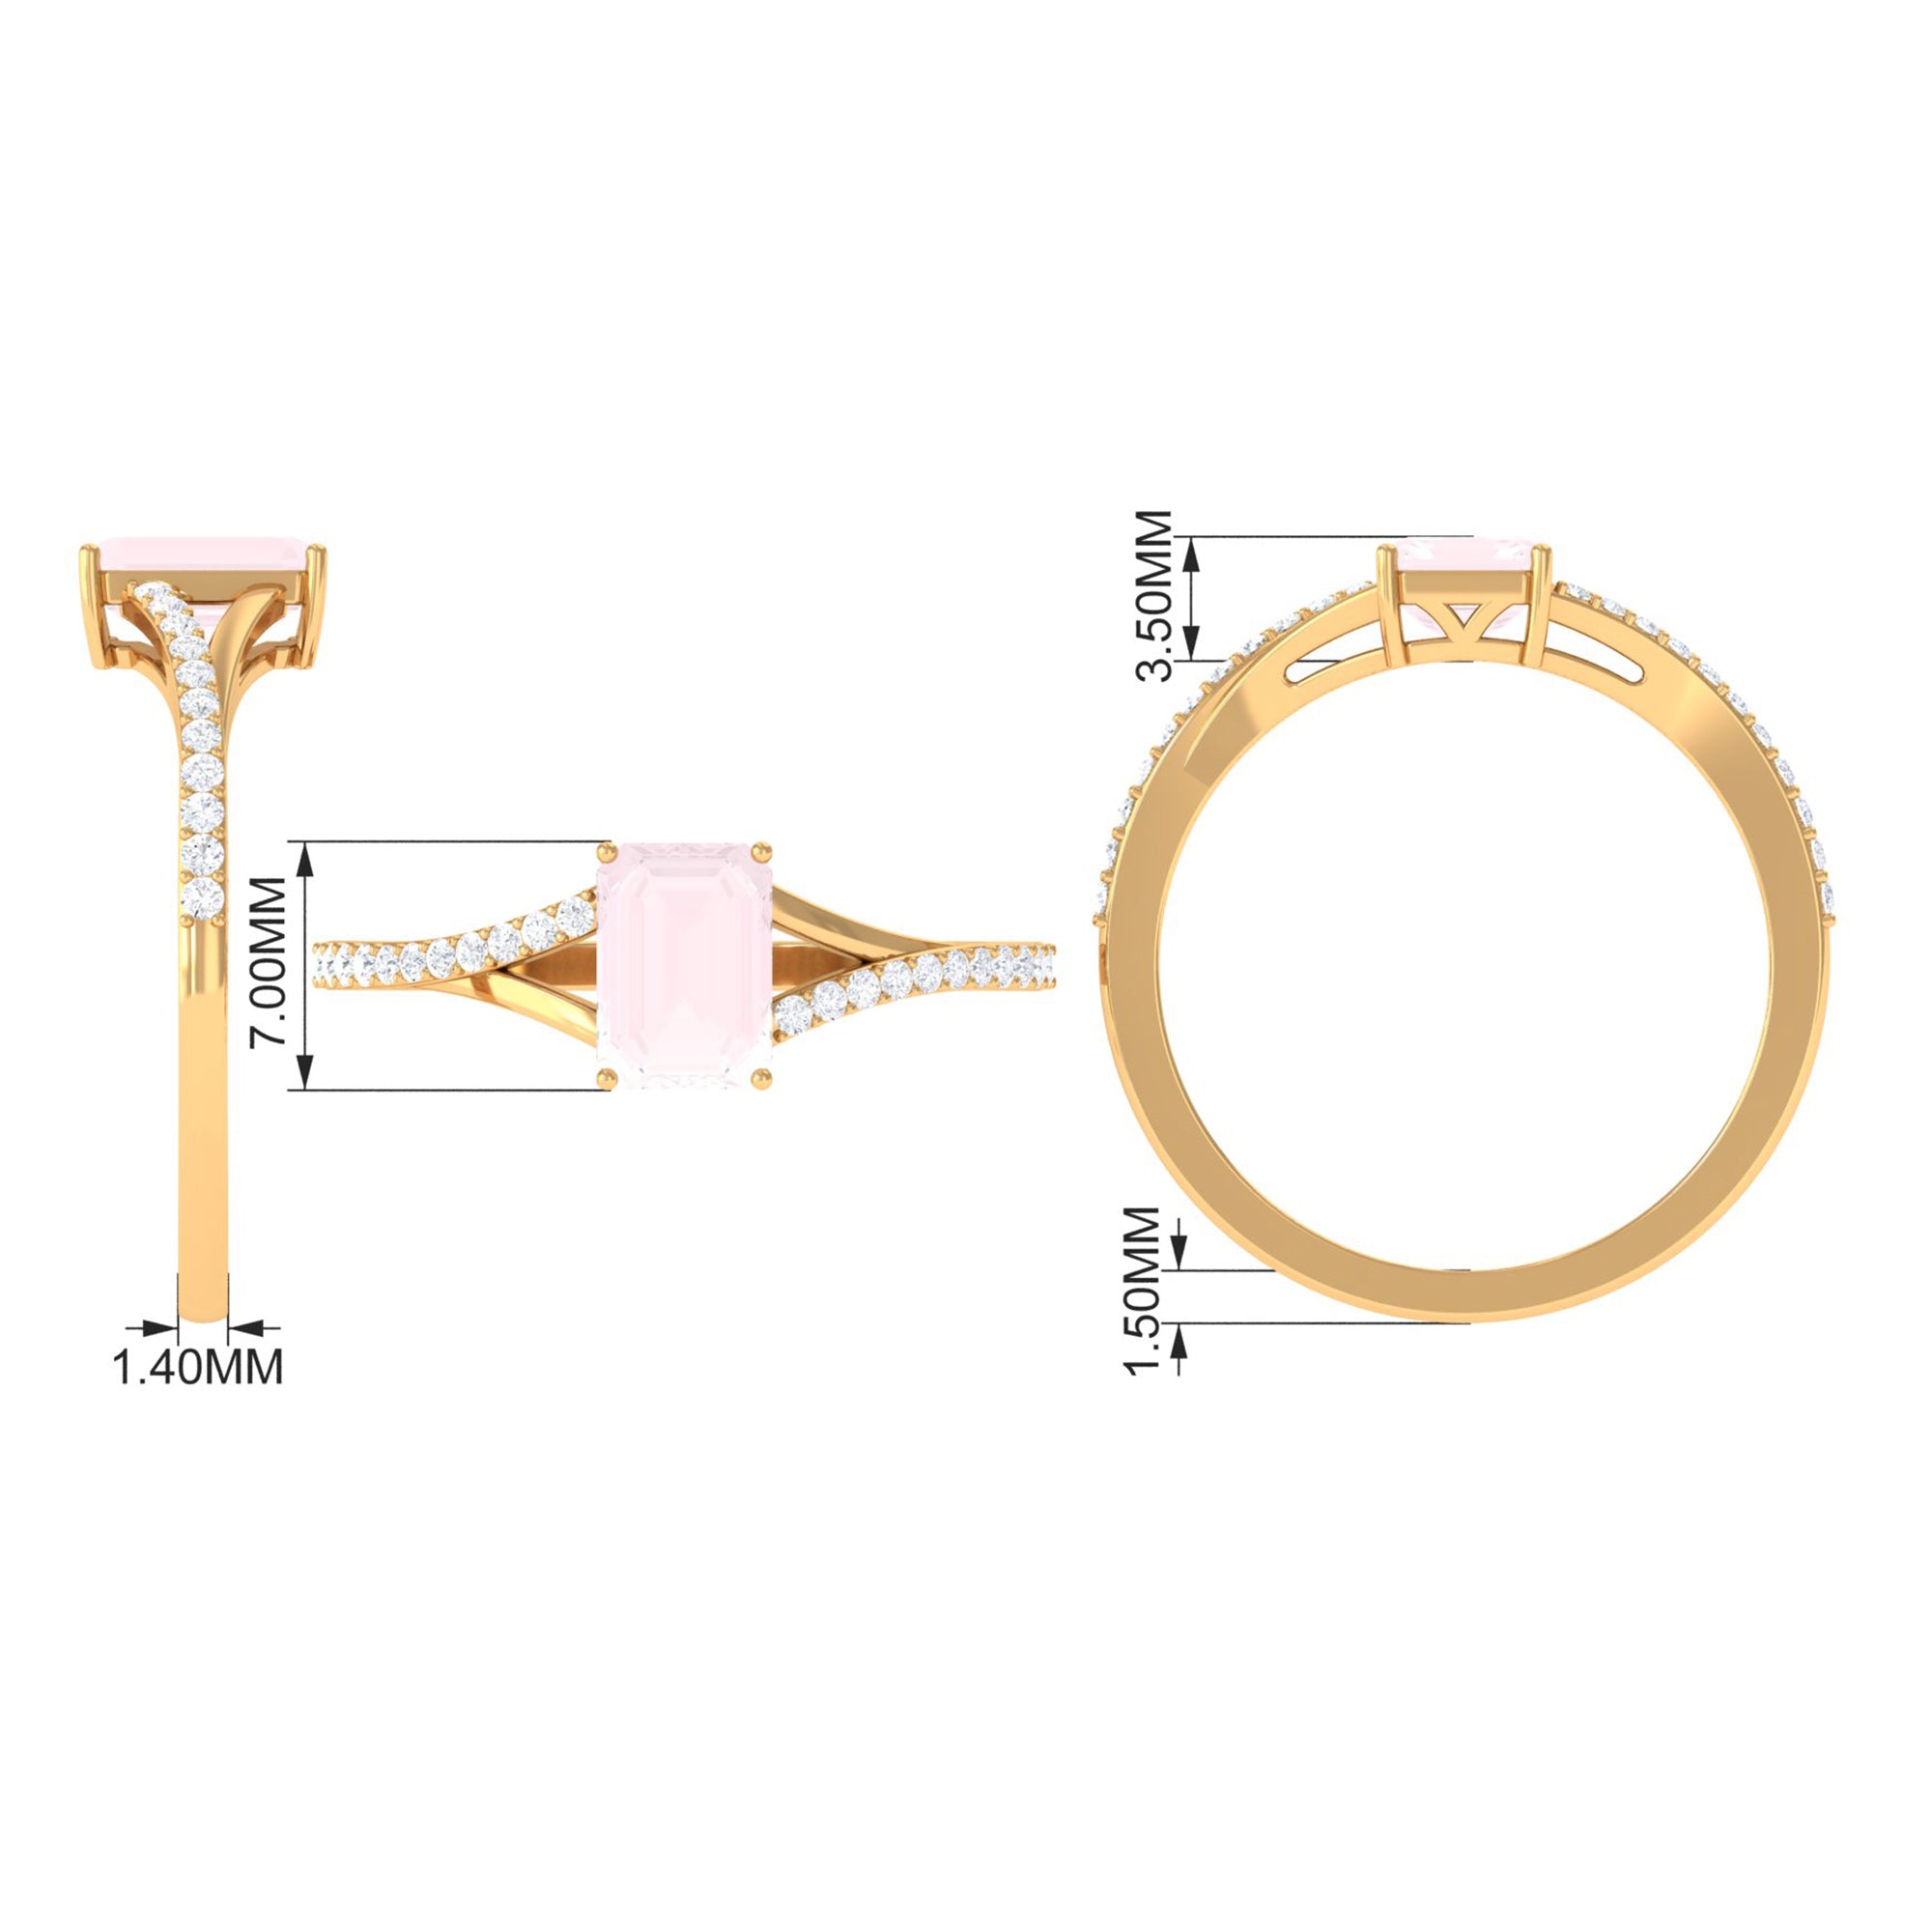 Split Shank Rose Quartz Solitaire Ring with Diamond Stones Rose Quartz - ( AAA ) - Quality - Rosec Jewels